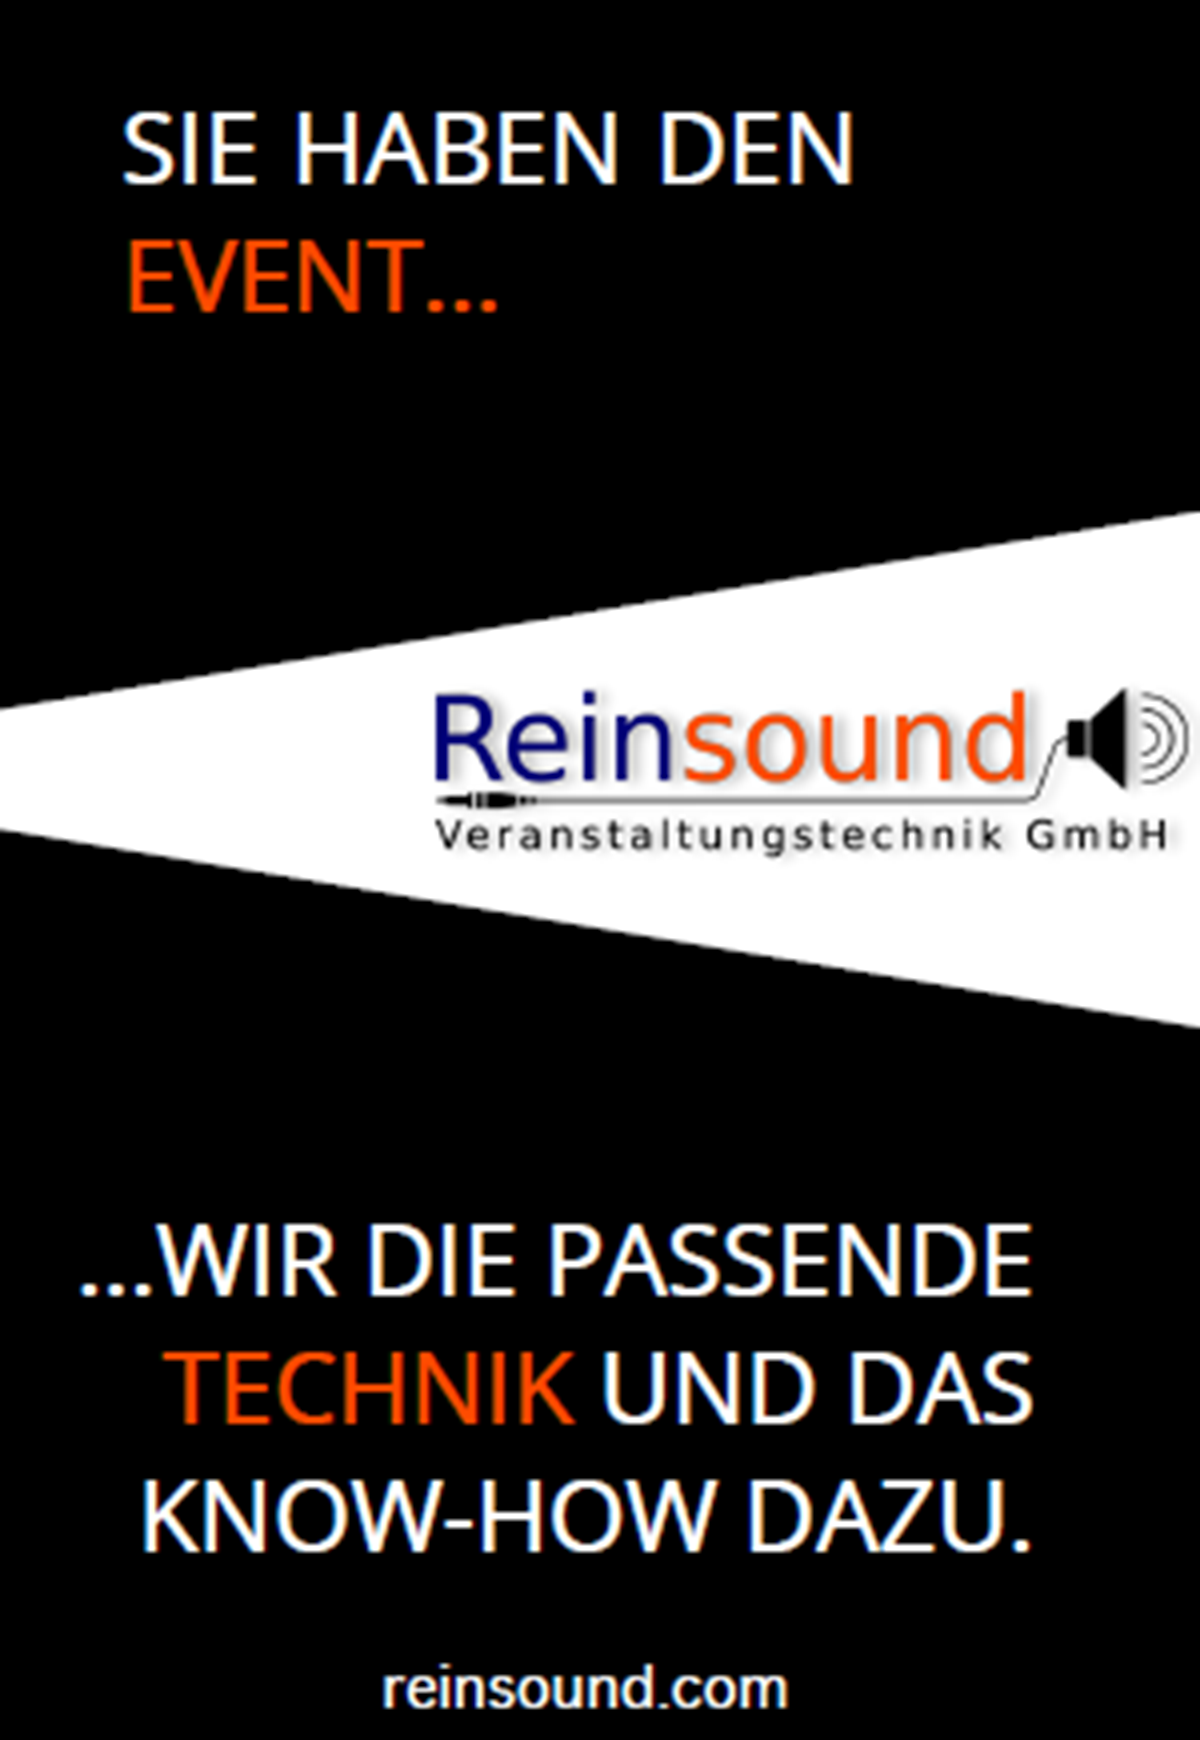 Reinsound Veranstaltungstechnik GmbH